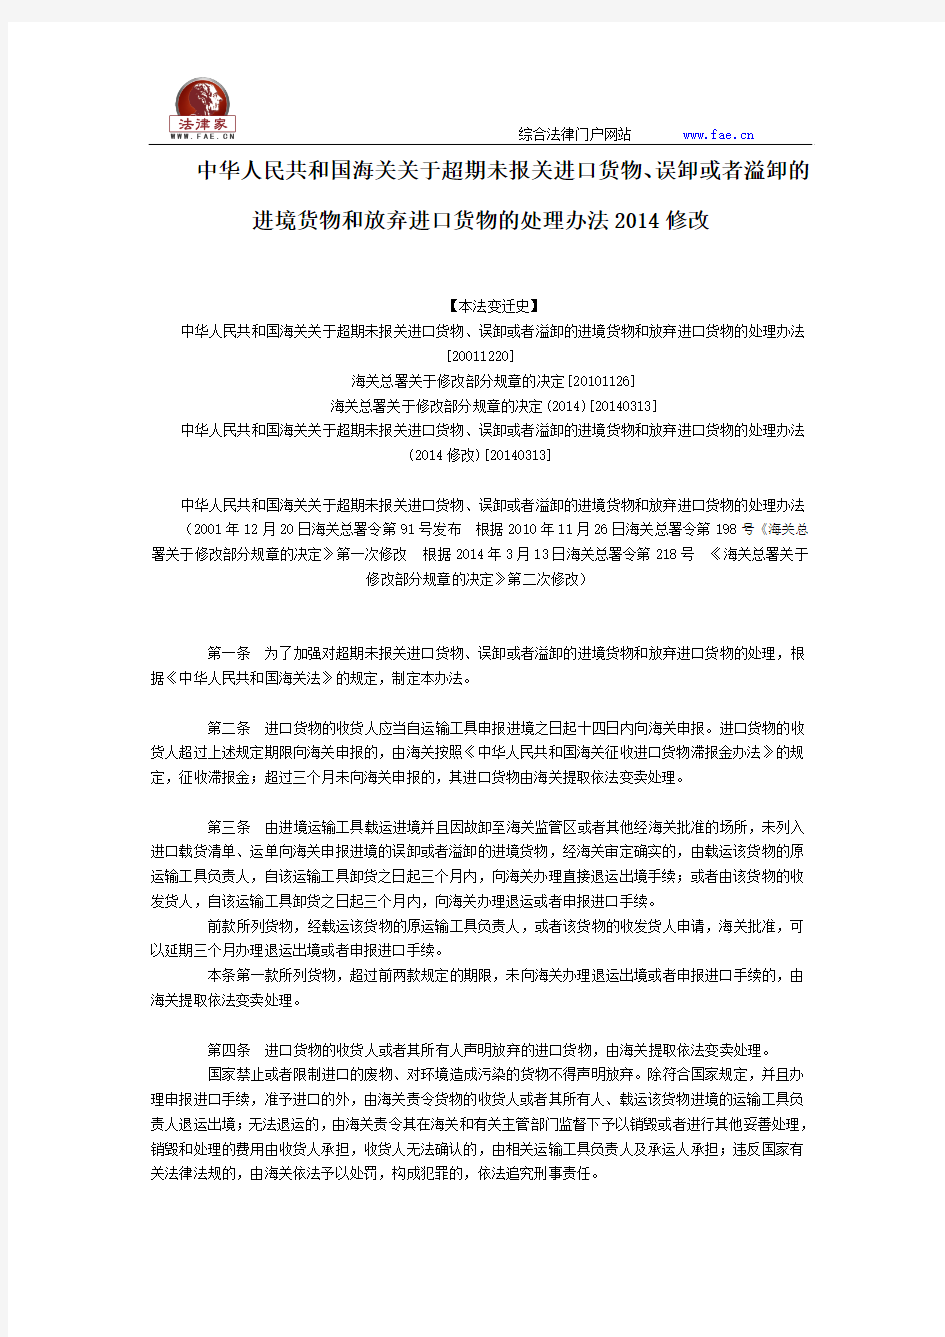 中华人民共和国关于超期关进口货物、误者的进境货物和放弃进口货物的处理办法2014修改全文--国务院部委规章